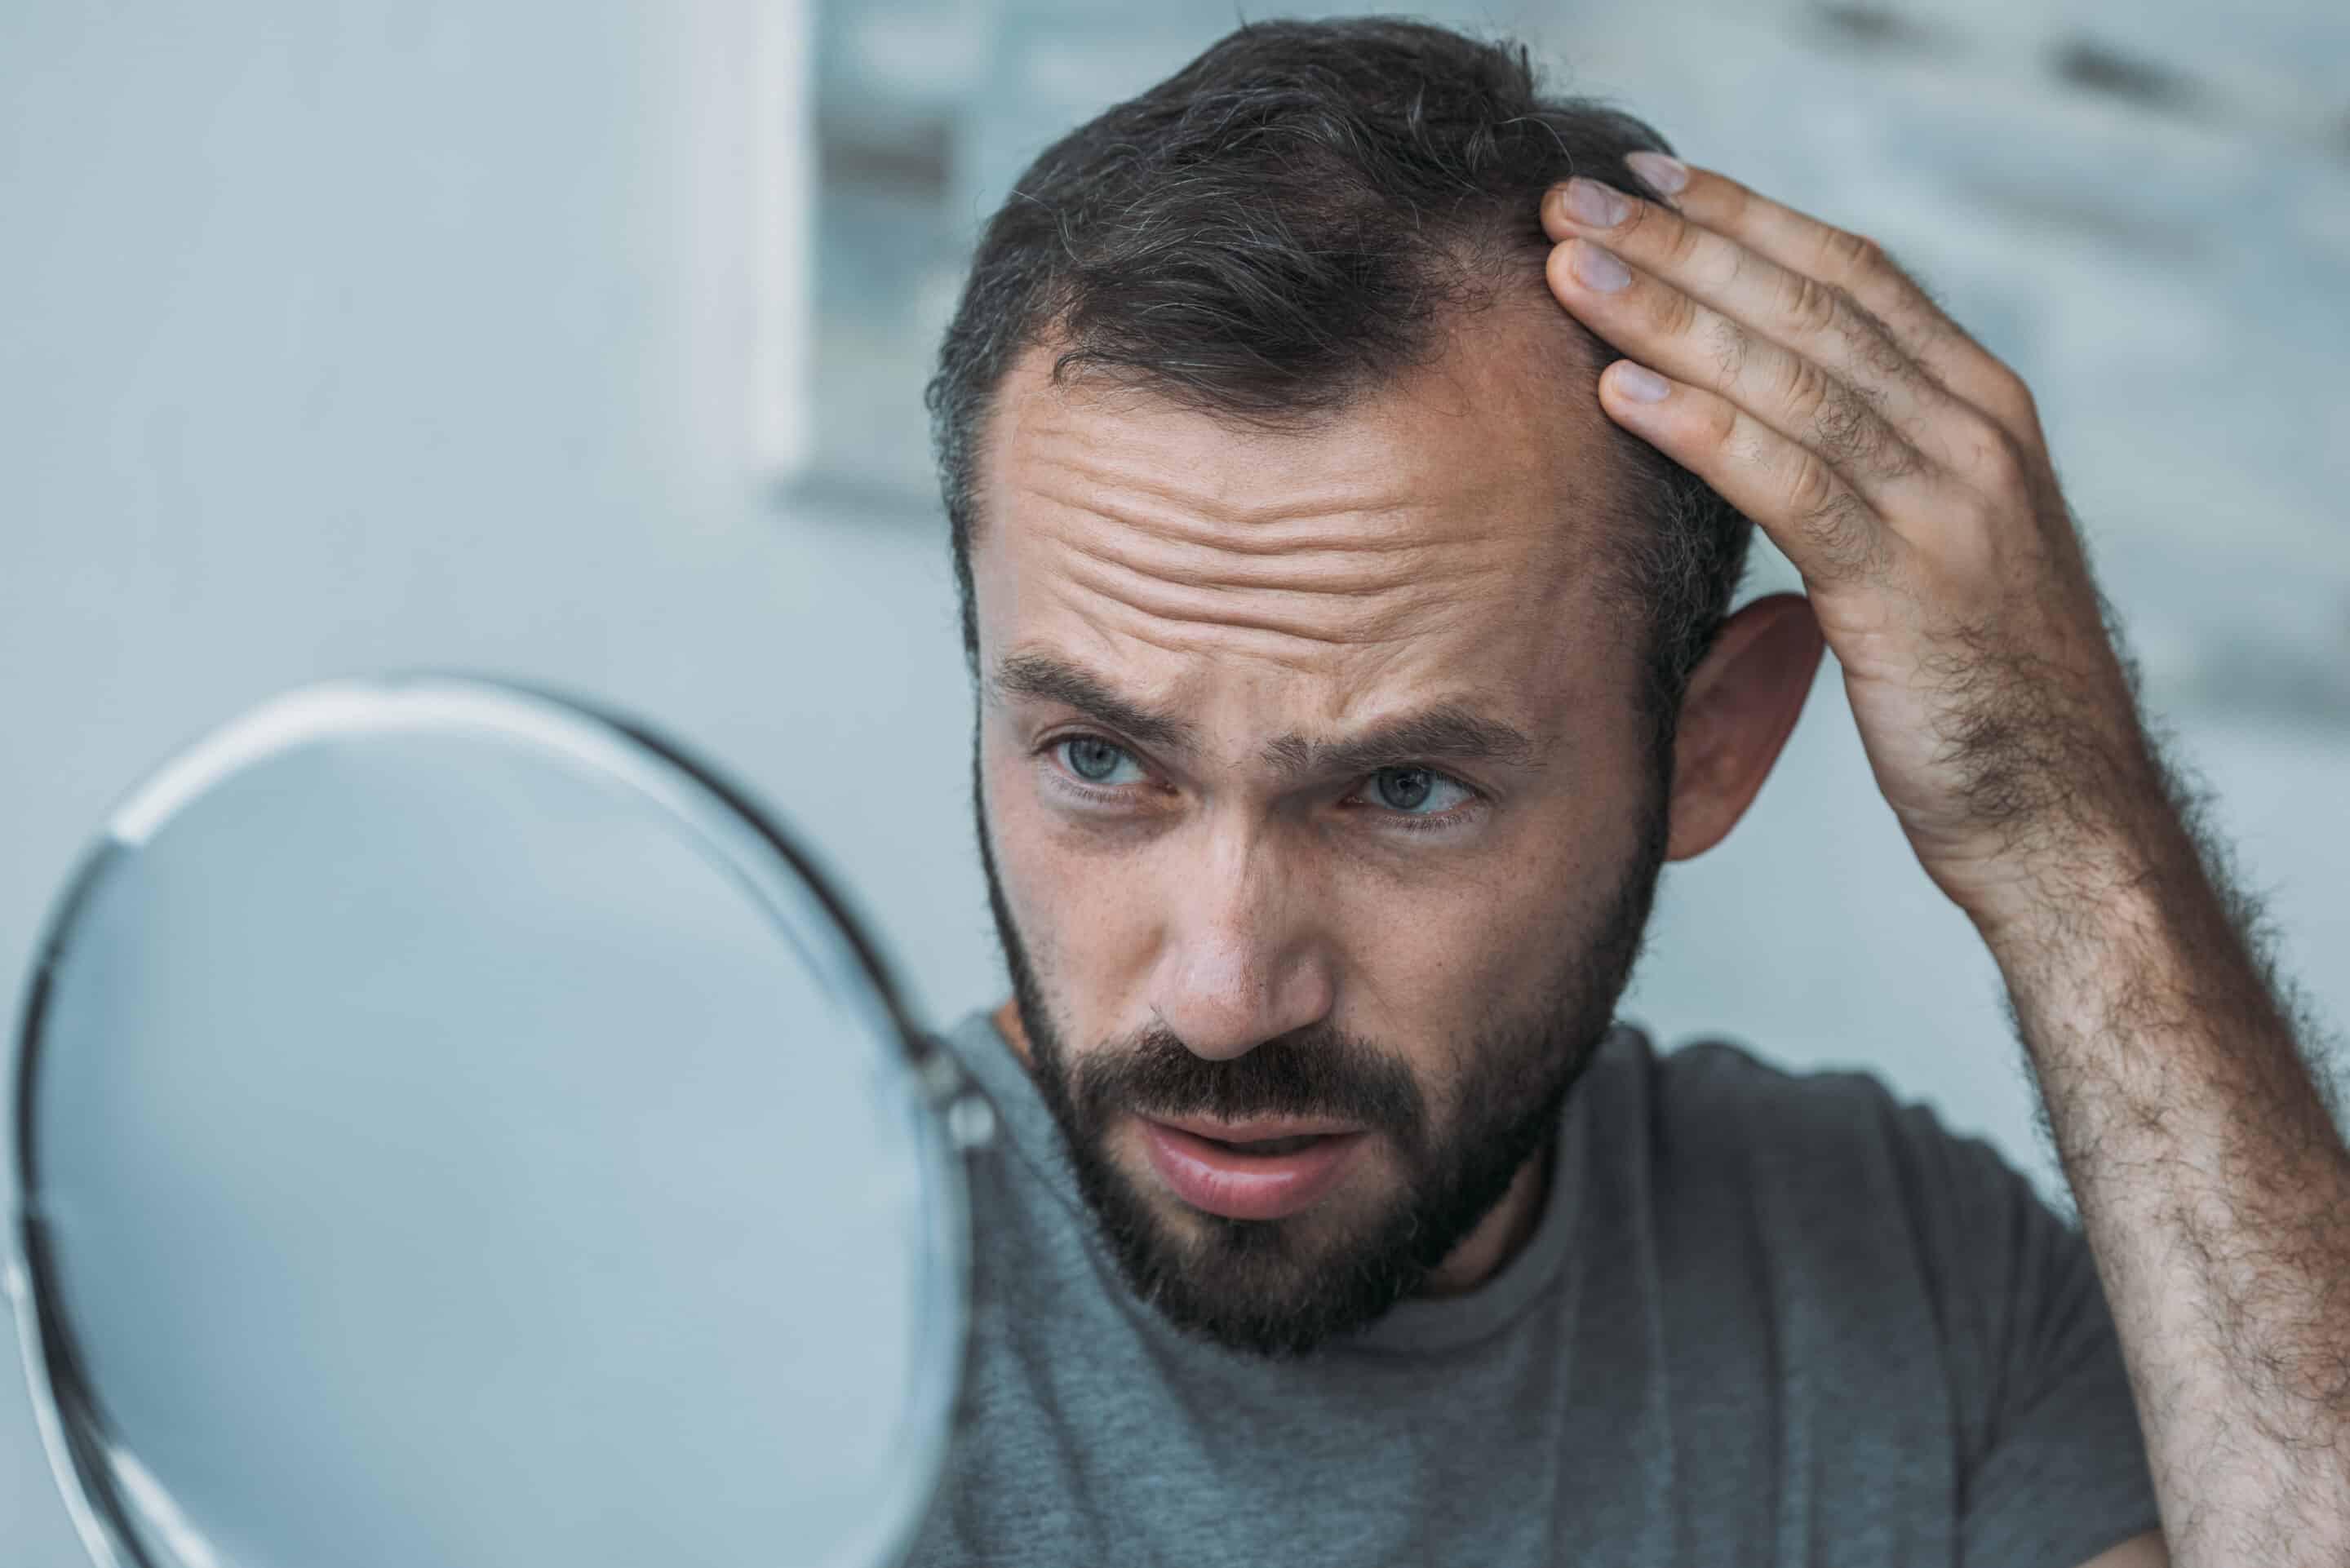 Ein Mann betrachtet seine Geheimratsecken vor dem Spiegel und benötigt eine Haartransplantation